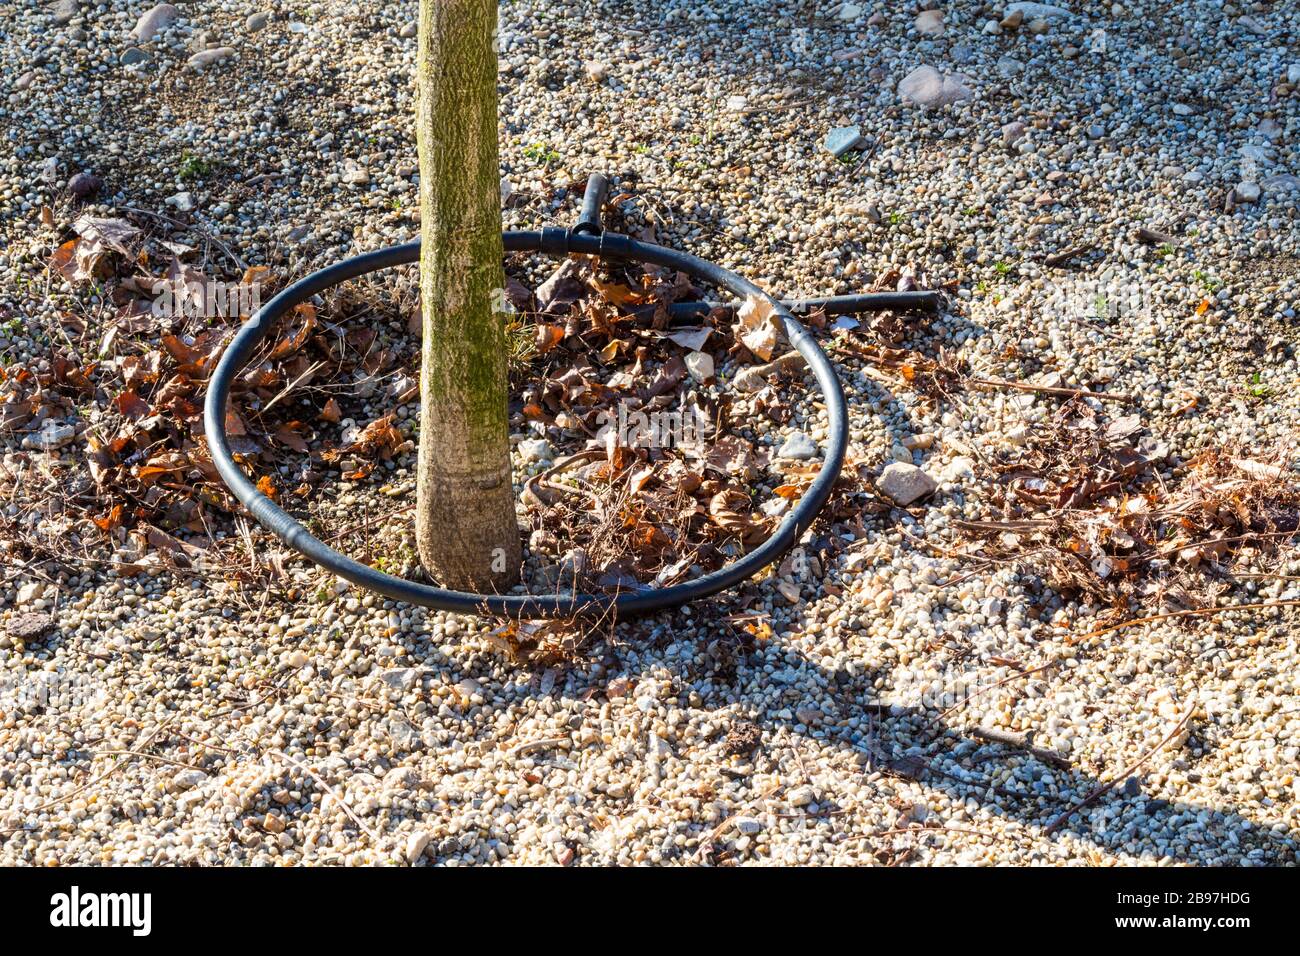 Système D'irrigation D'arrosage Pulvérisation D'eau Sur Le Terrain Photo  stock - Image du irriguez, zone: 221474910